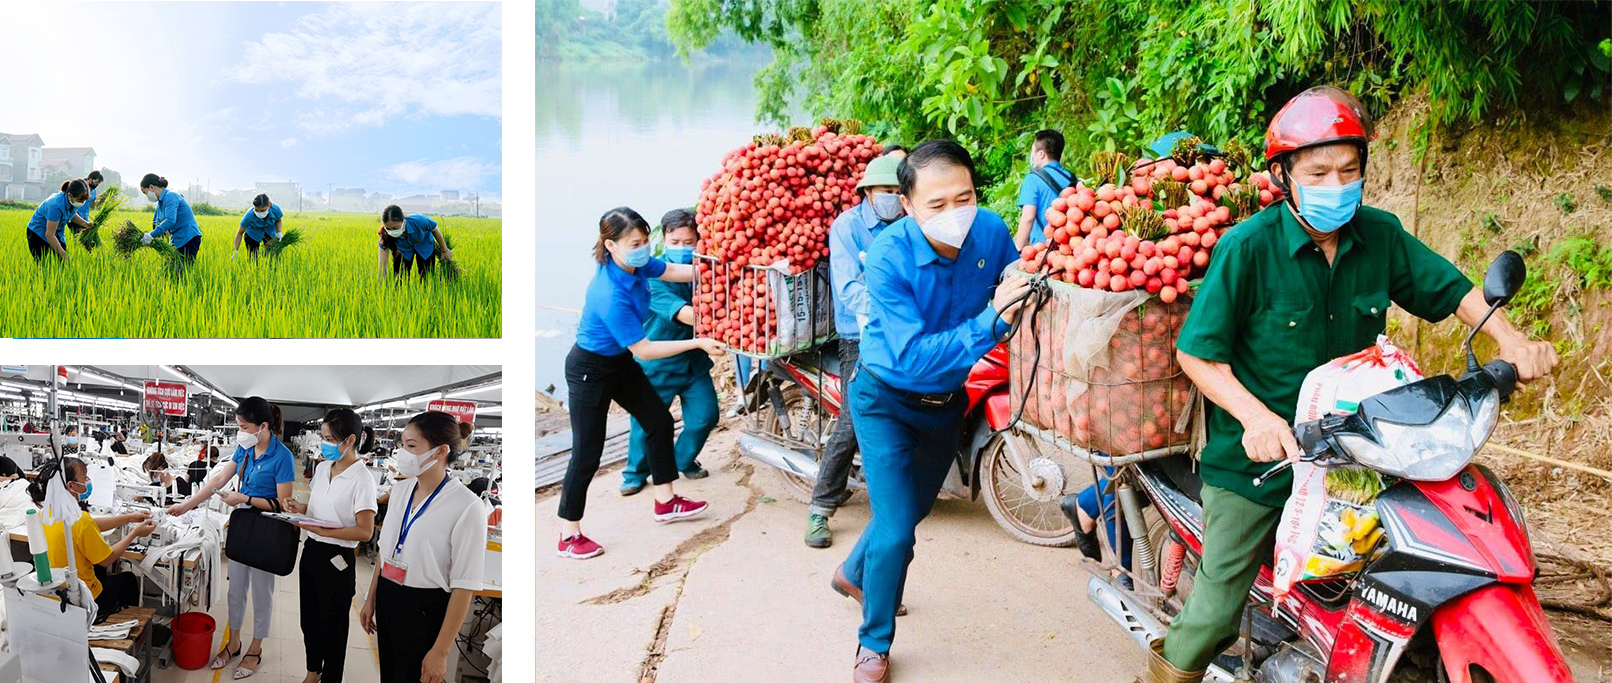 Động lực đưa Bắc Giang trở thành tỉnh công nghiệp hiện đại